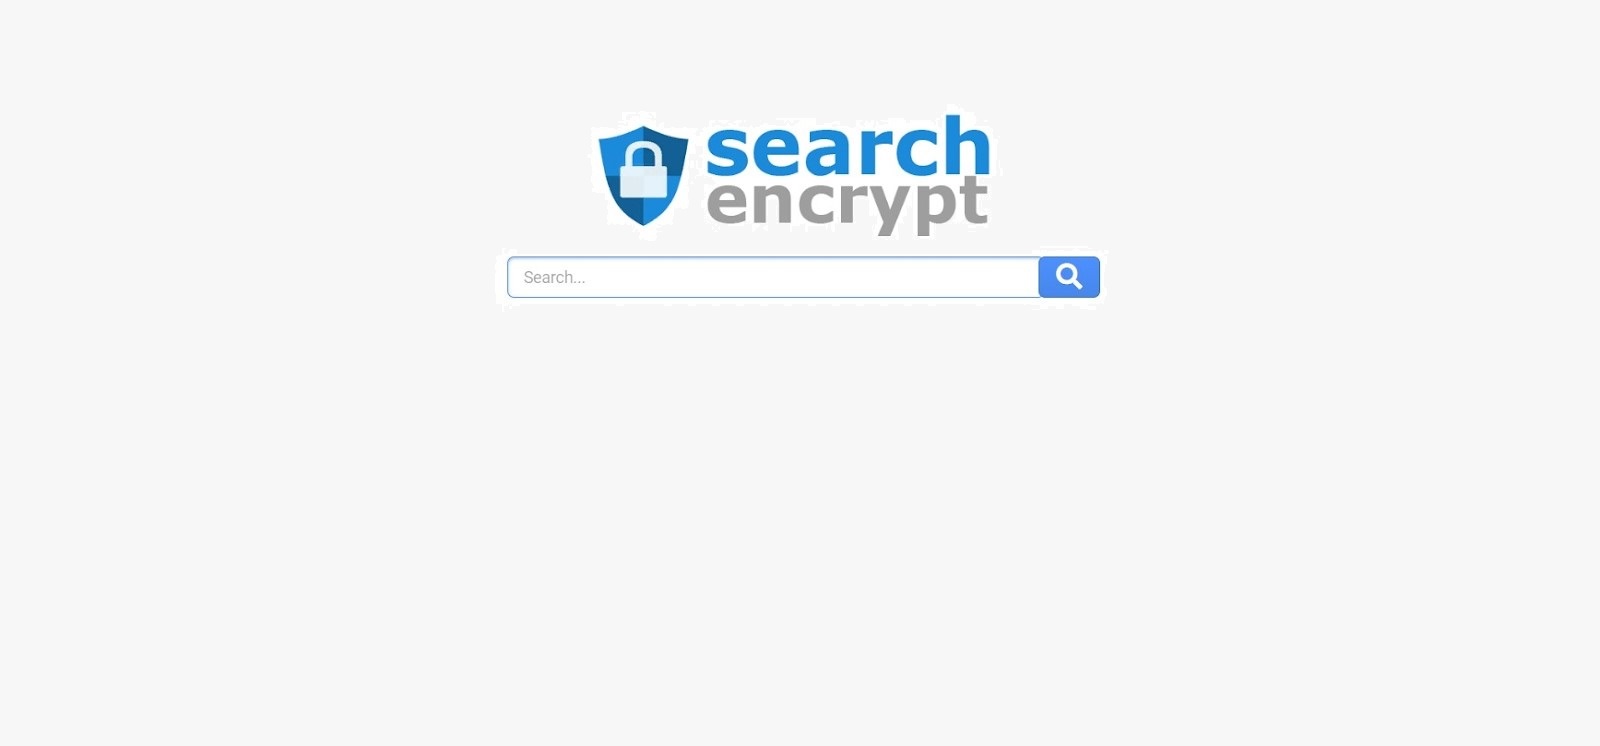 Приватный поисковик SearchEncrypt